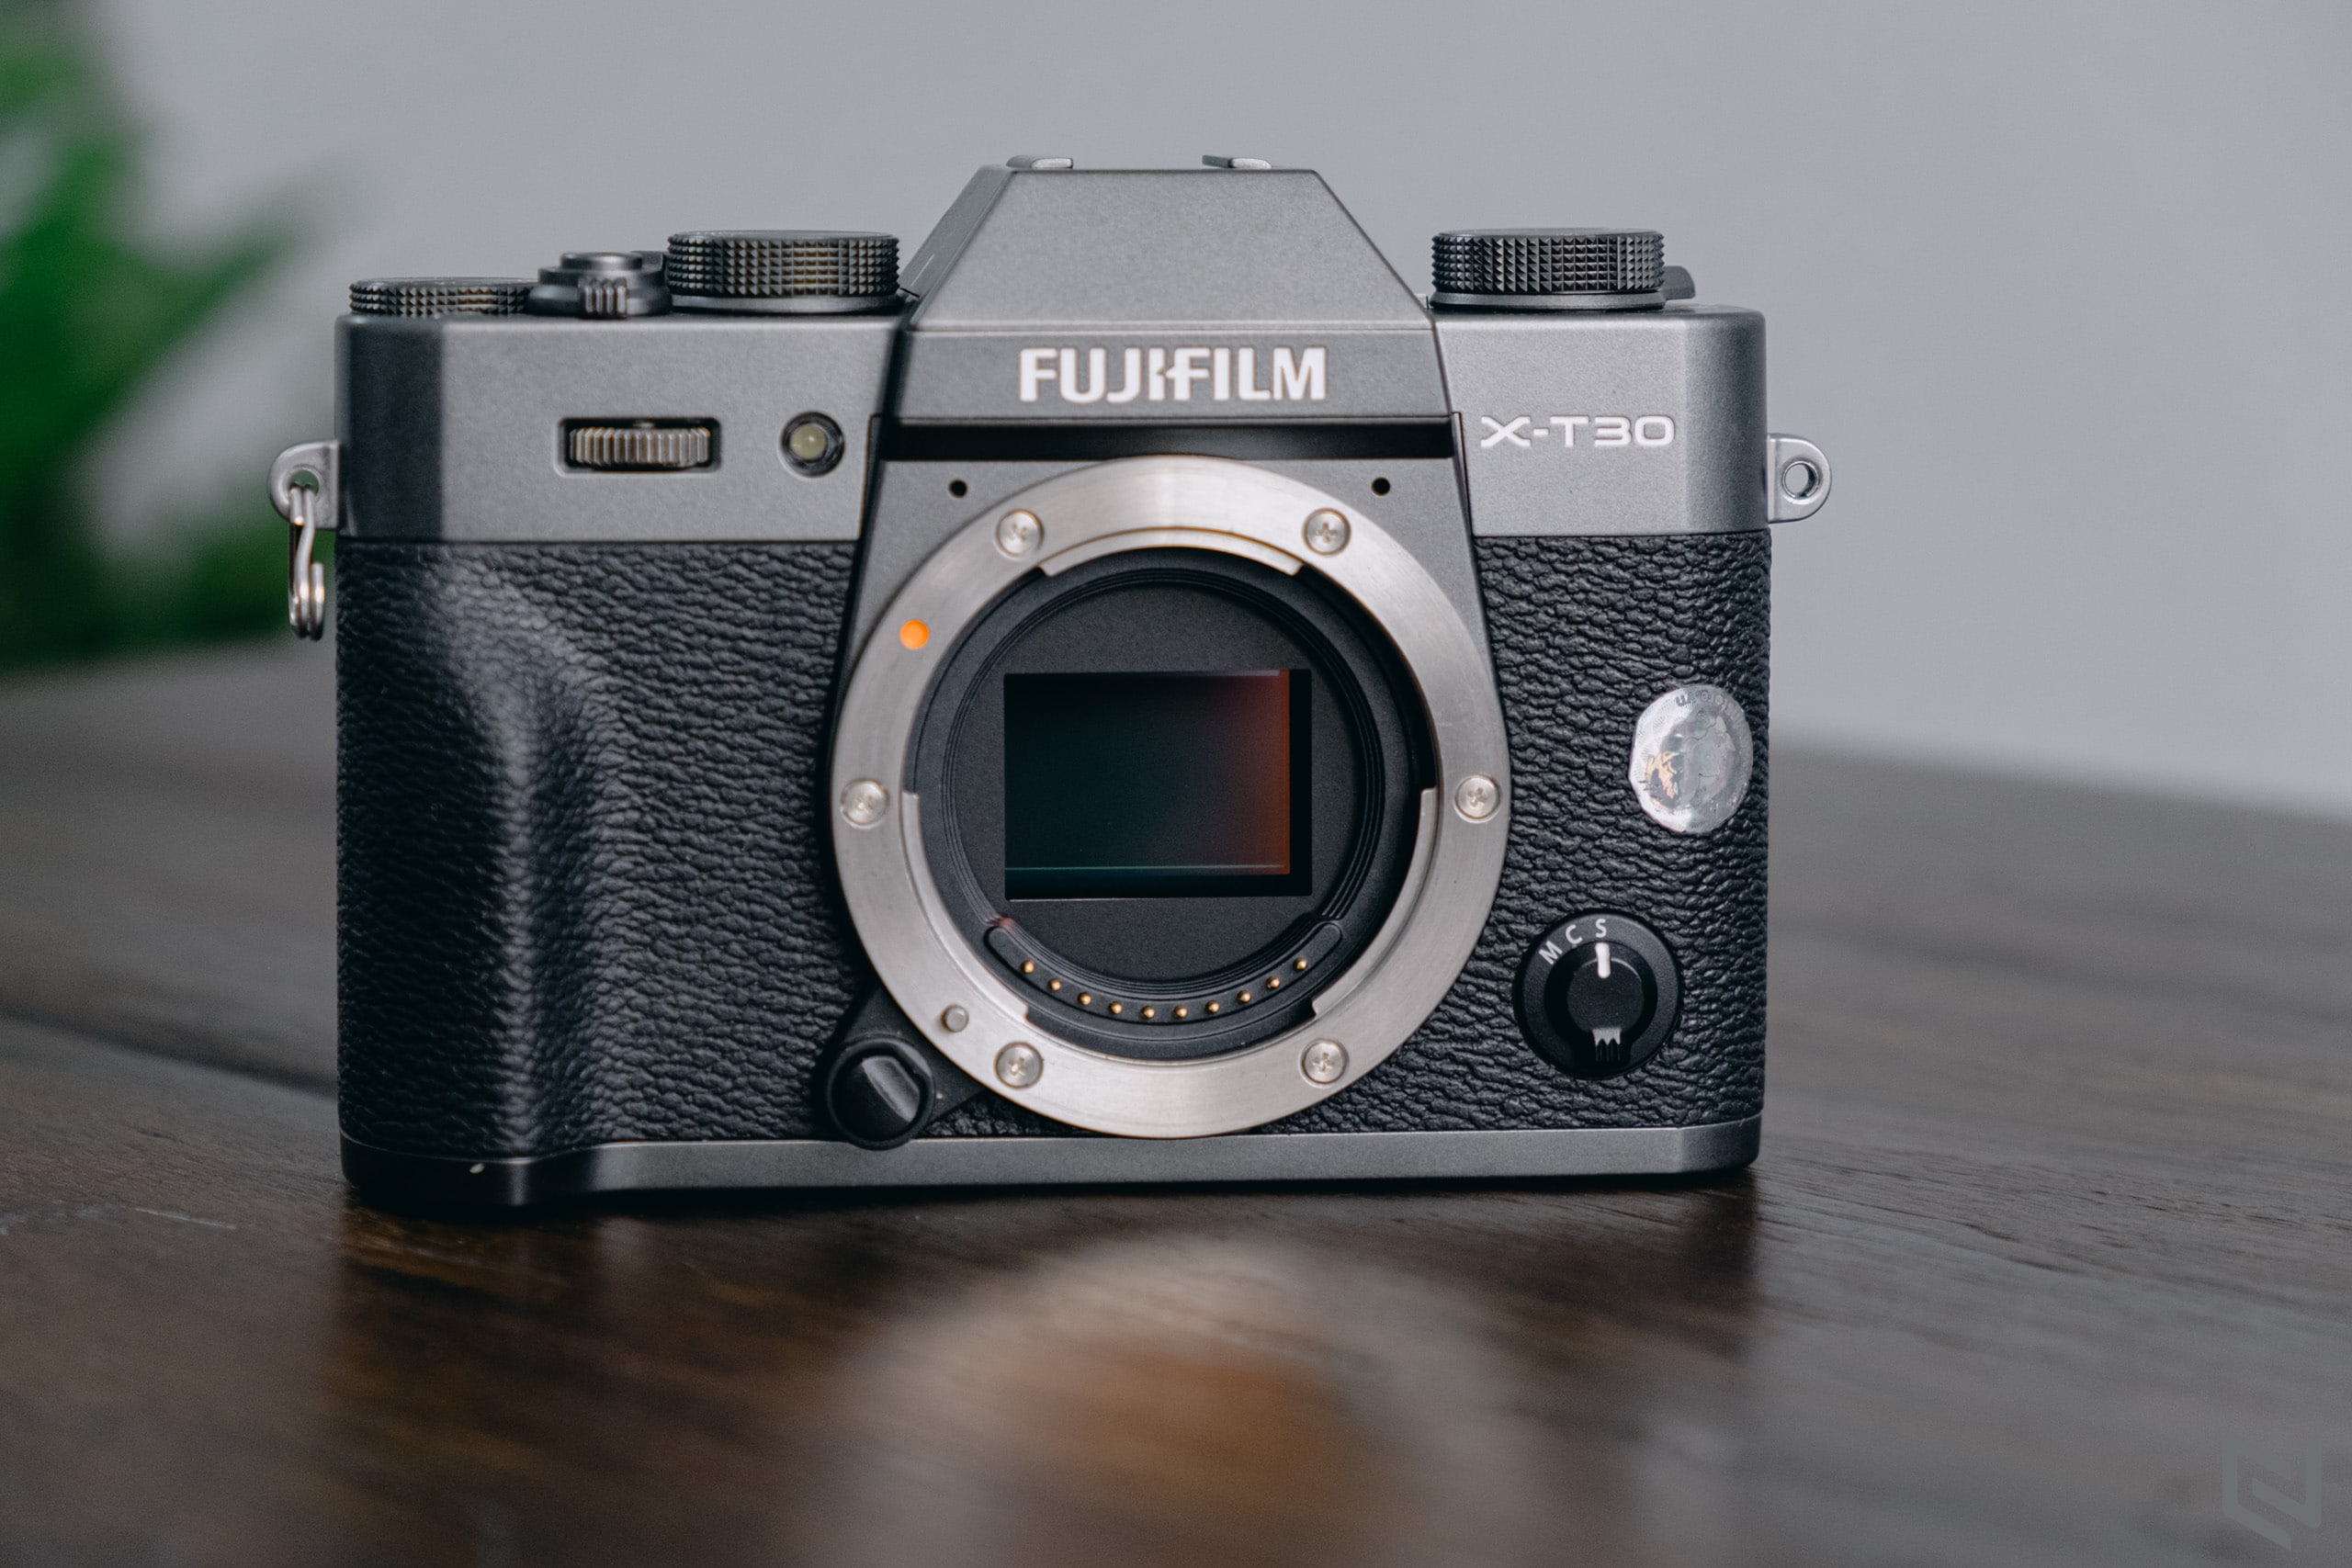 Fujifilm ra mắt X Webcam phiên bản 2.0, thêm bảng điều chỉnh thông số trên màn hình máy tính